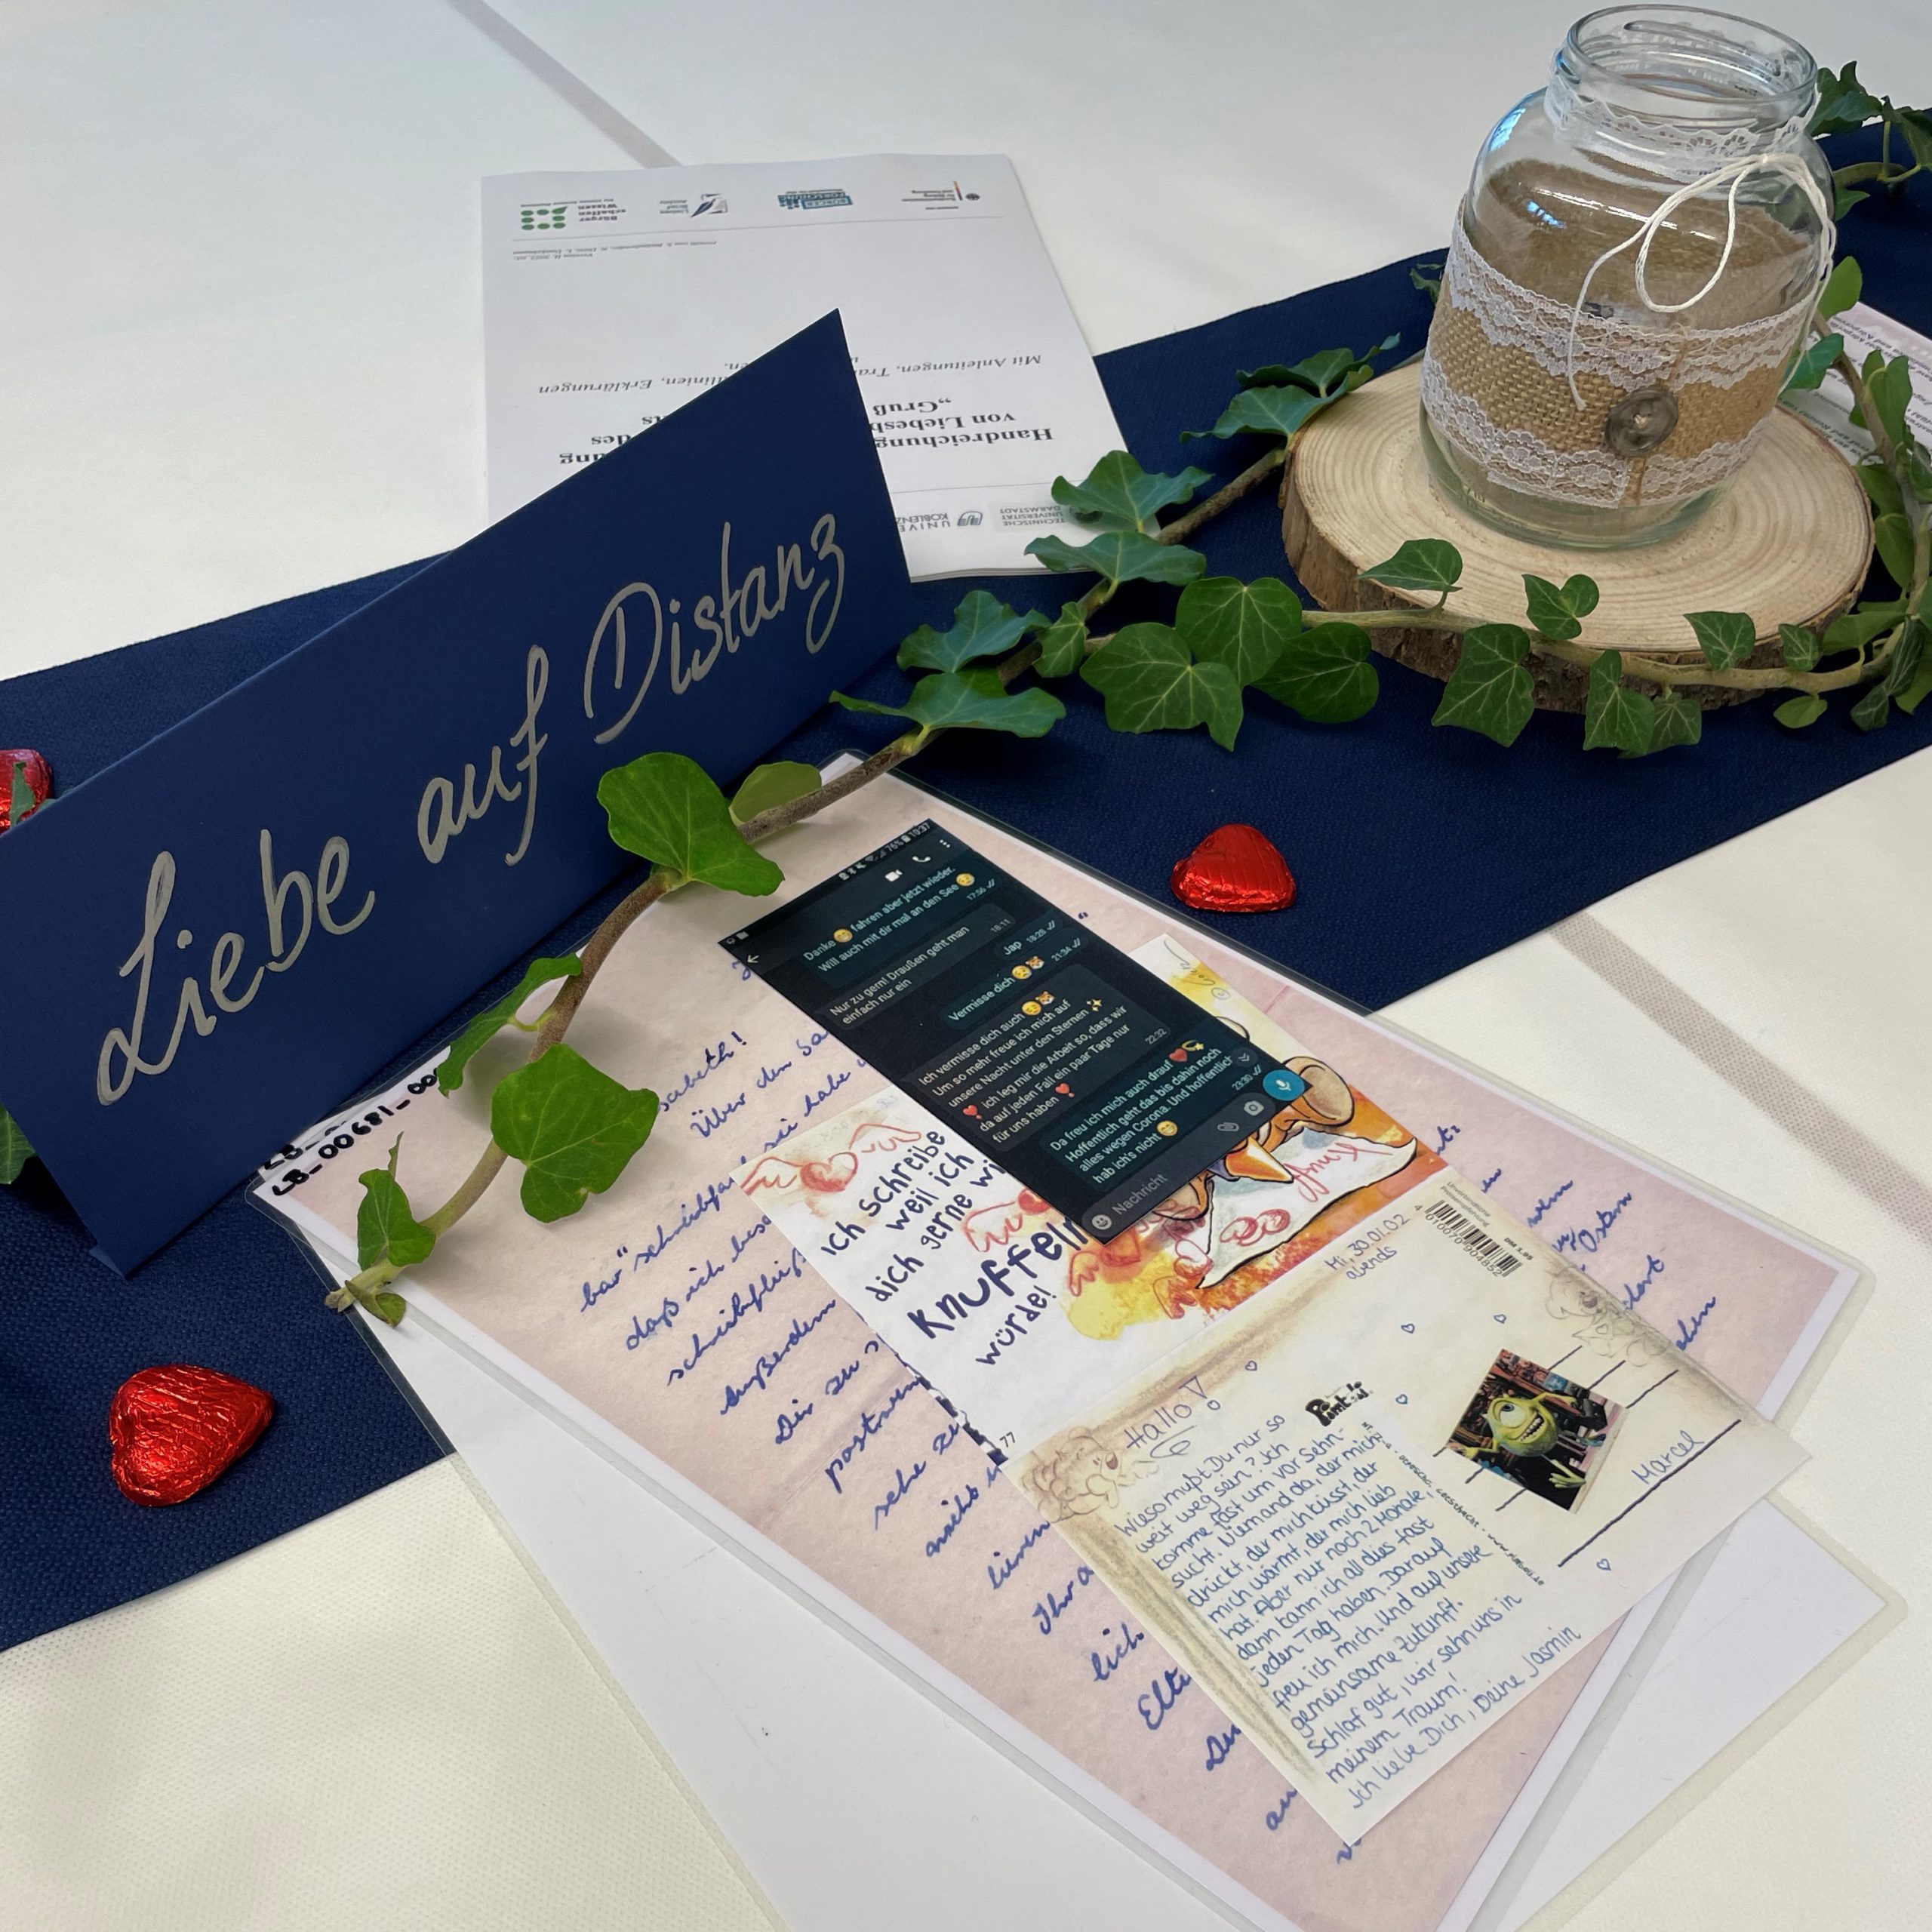 Digitale und handschriftliche Liebesbriefe und Postkarten auf dem Thementisch zu Liebe auf Distanz